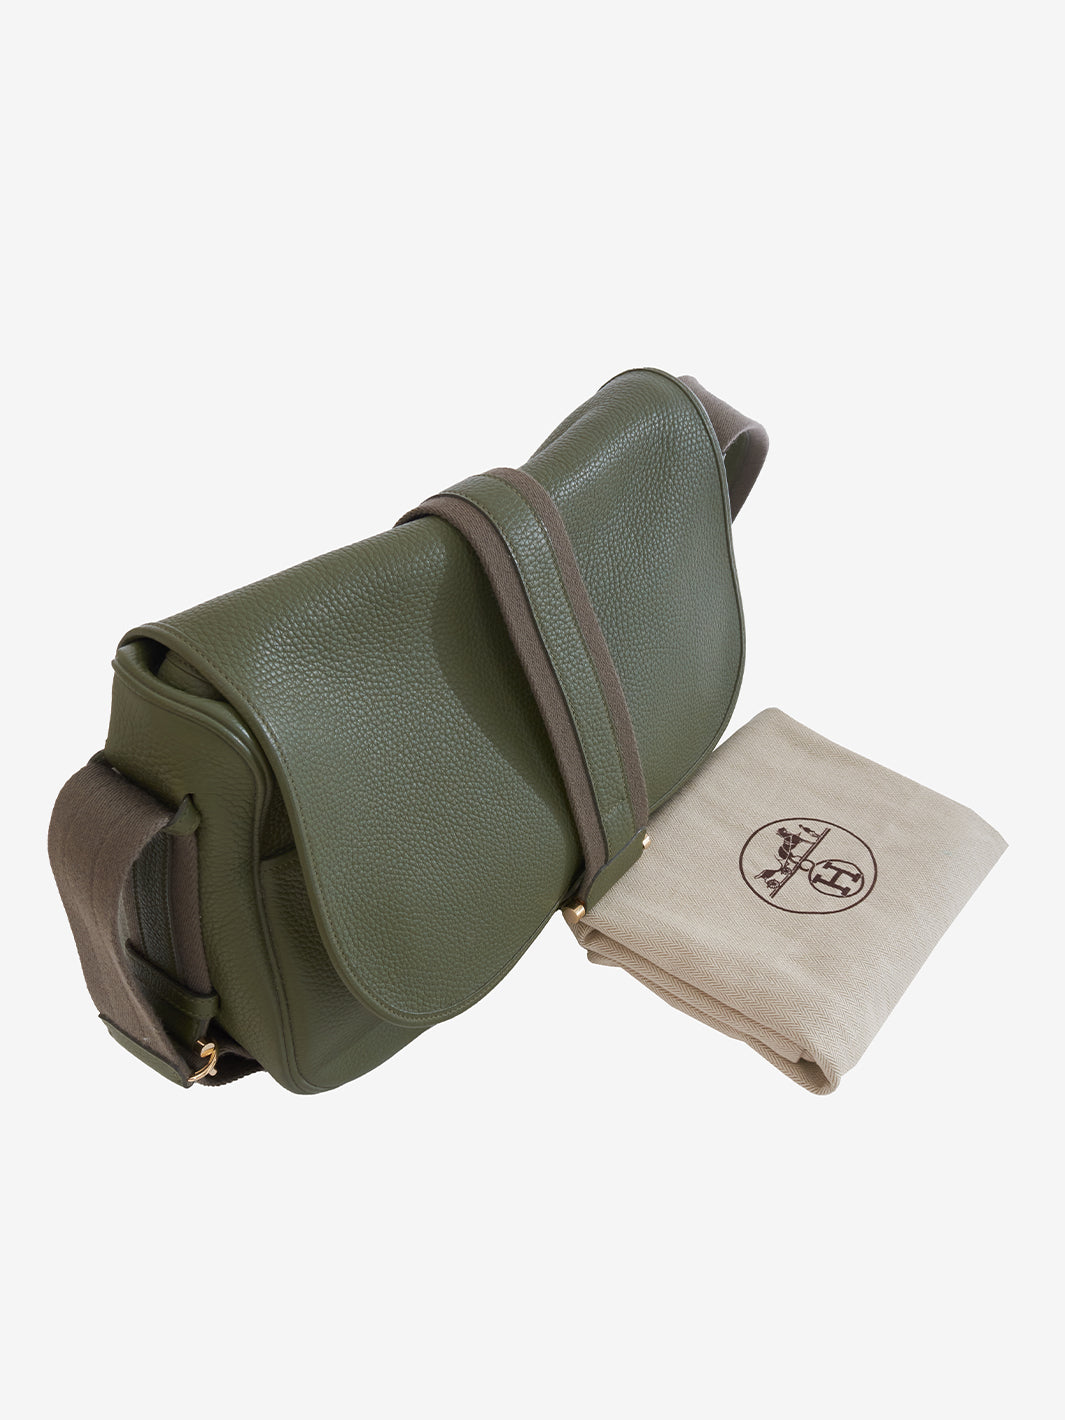 Hermès Bourlingue shoulder bag in green leather